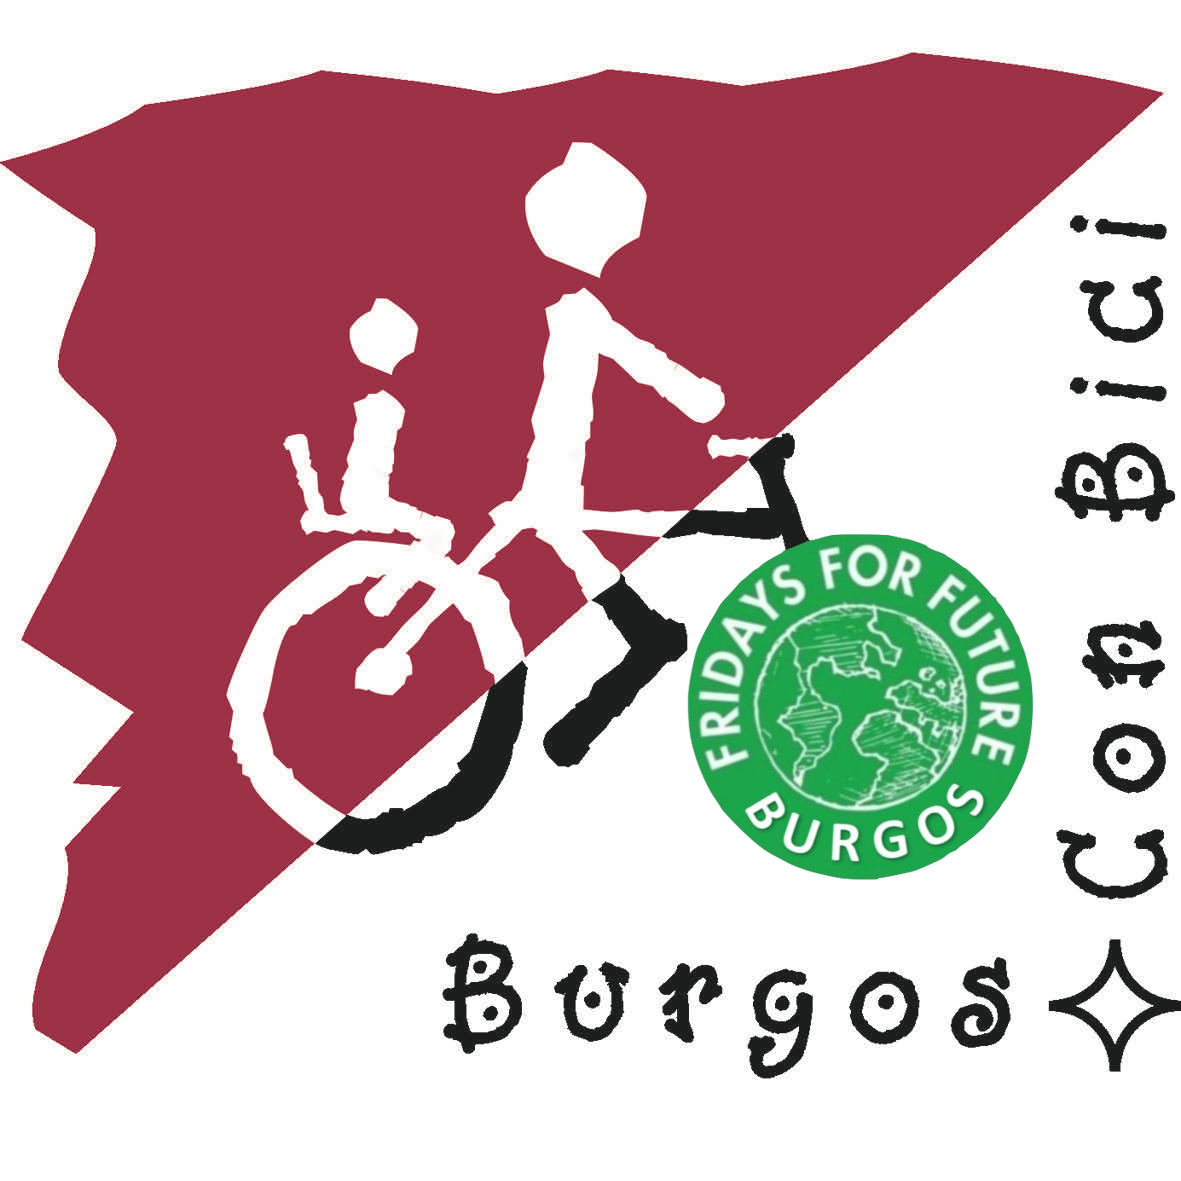 Logo de Burgos Con bici con logo de Fridays for future en la rueda delantera